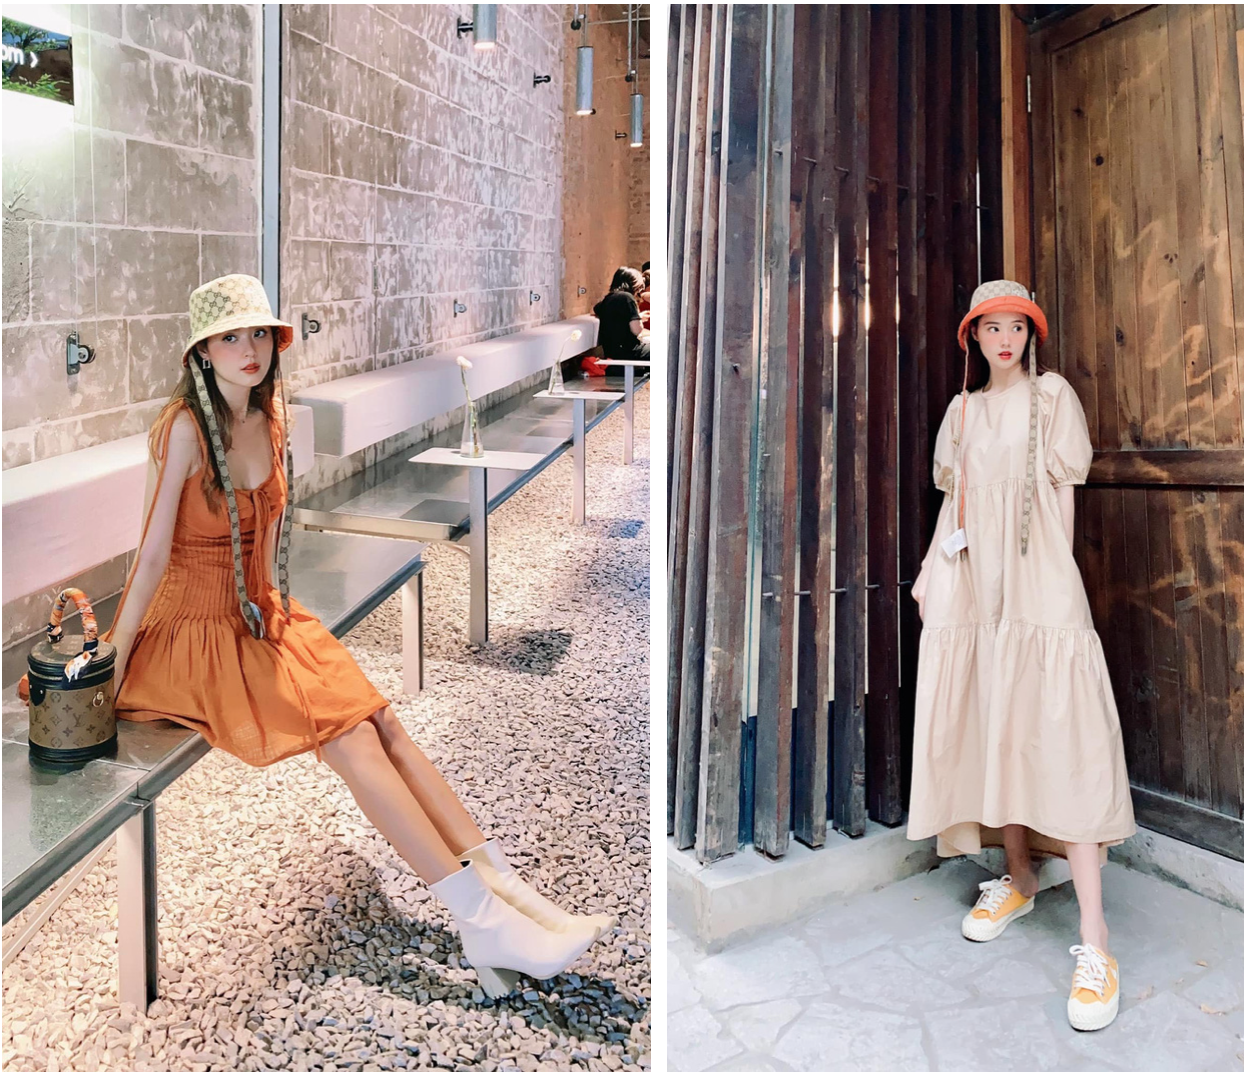 Chiếc nón Gucci này có cả màu cam và màu be nên cô nàng dễ dàng phối cùng 2 chiếc váy có màu sắc tương tự mà chẳng sợ lạc quẻ.